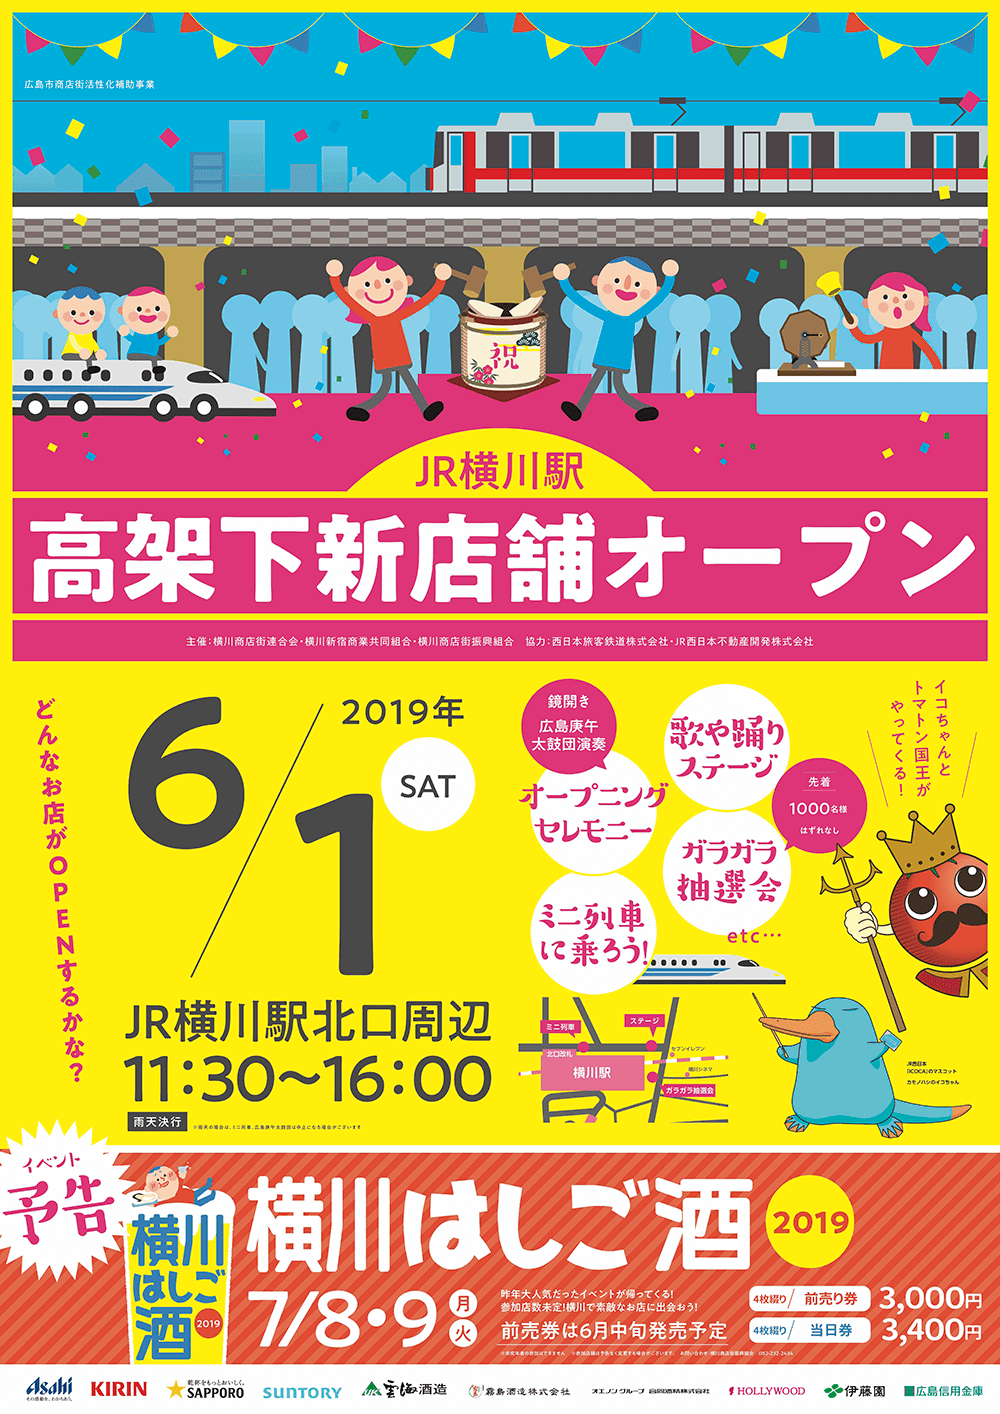 6/1JR横川駅高架下新店舗オープニングイベント開催